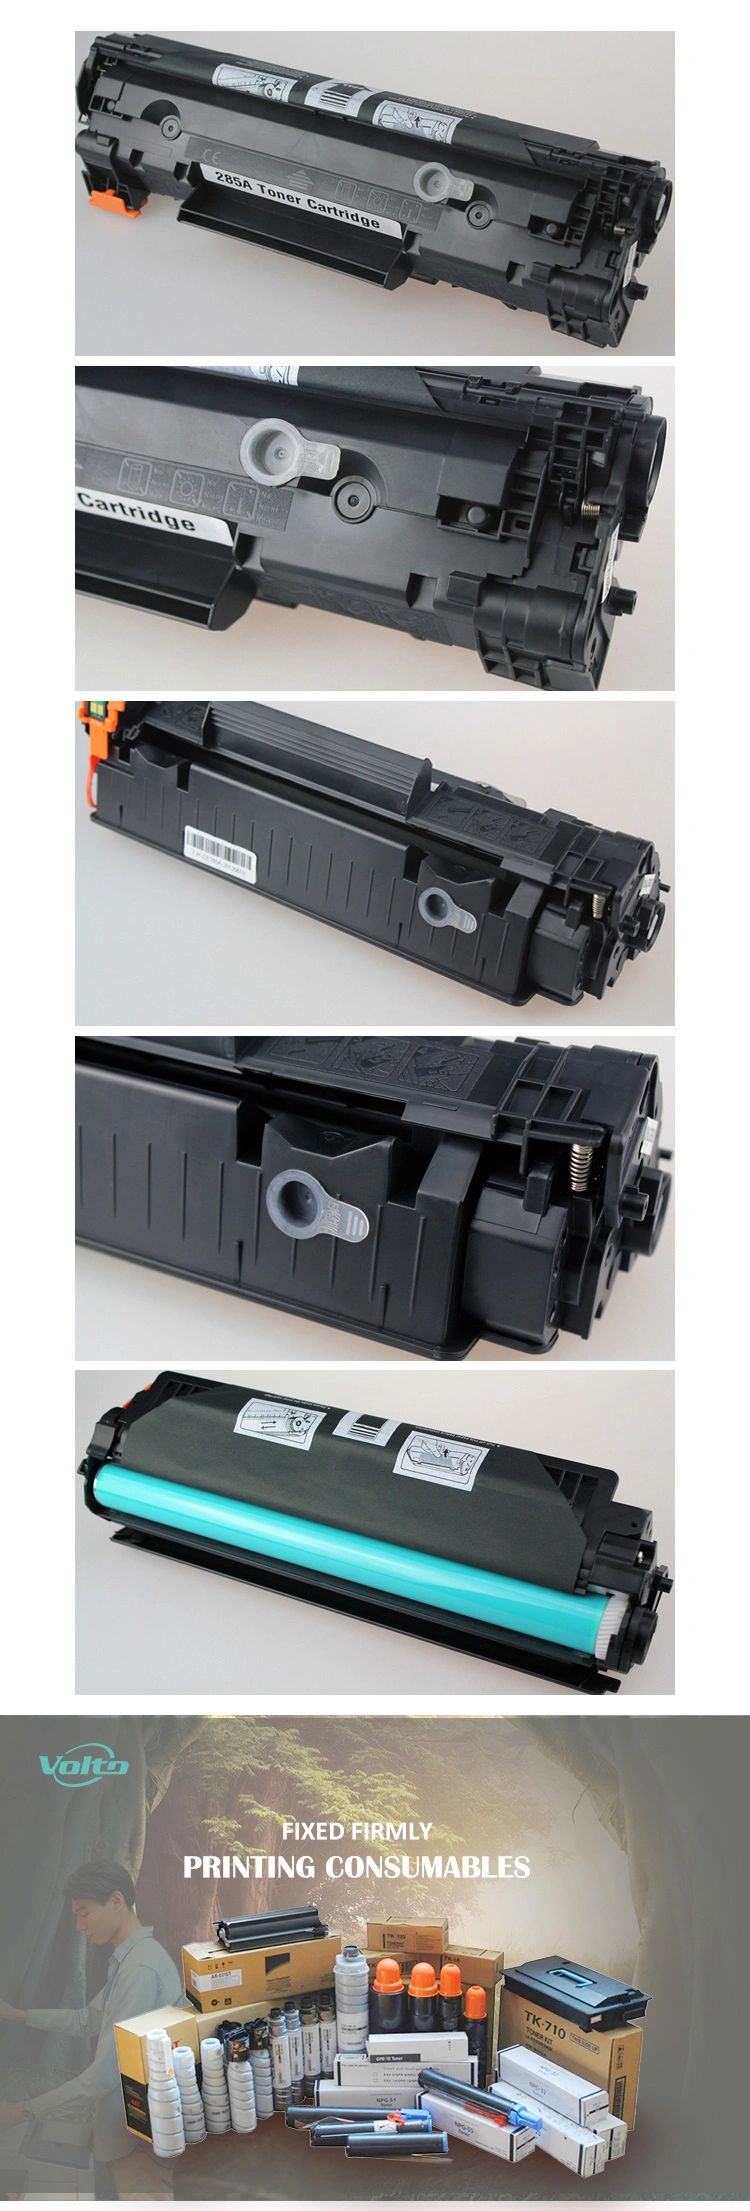 C131 331 731 Wholesale Compatible Color Laser Toner Cartridge for Canon Lbp7100cn 7110cw Mf8230cn 8280cw Printer